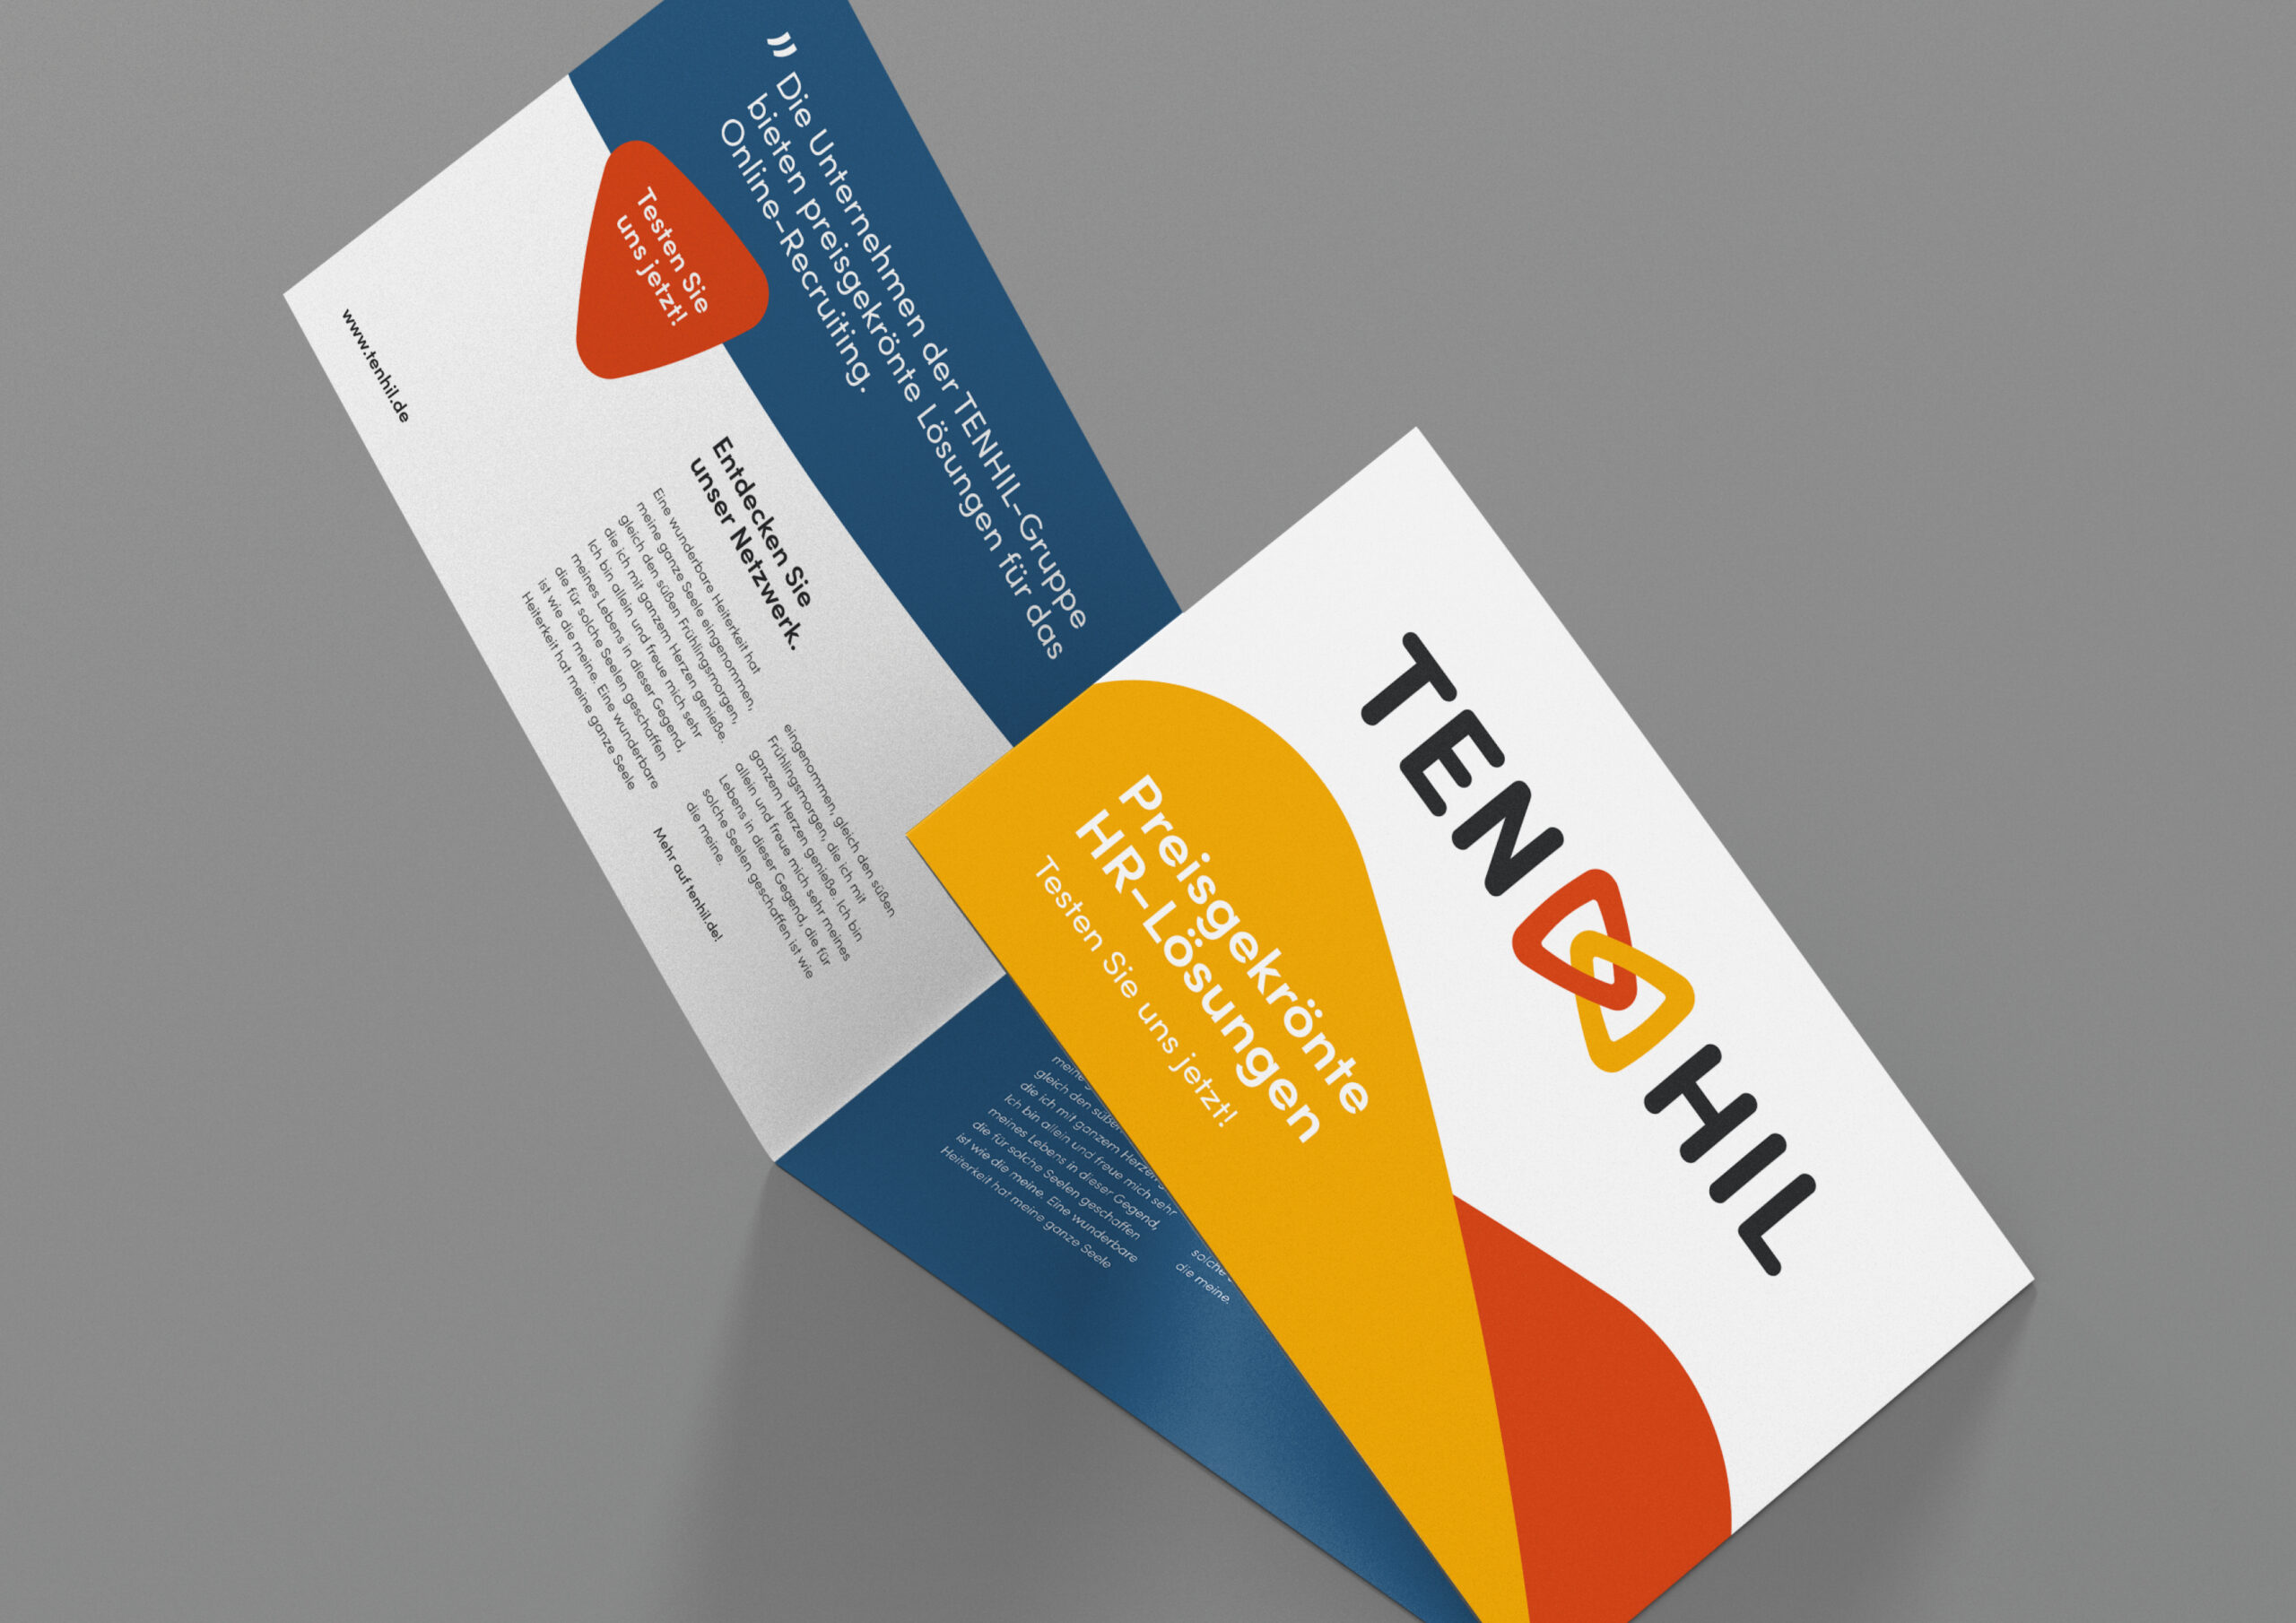 LaF_Tenhil_Corporate-Design10